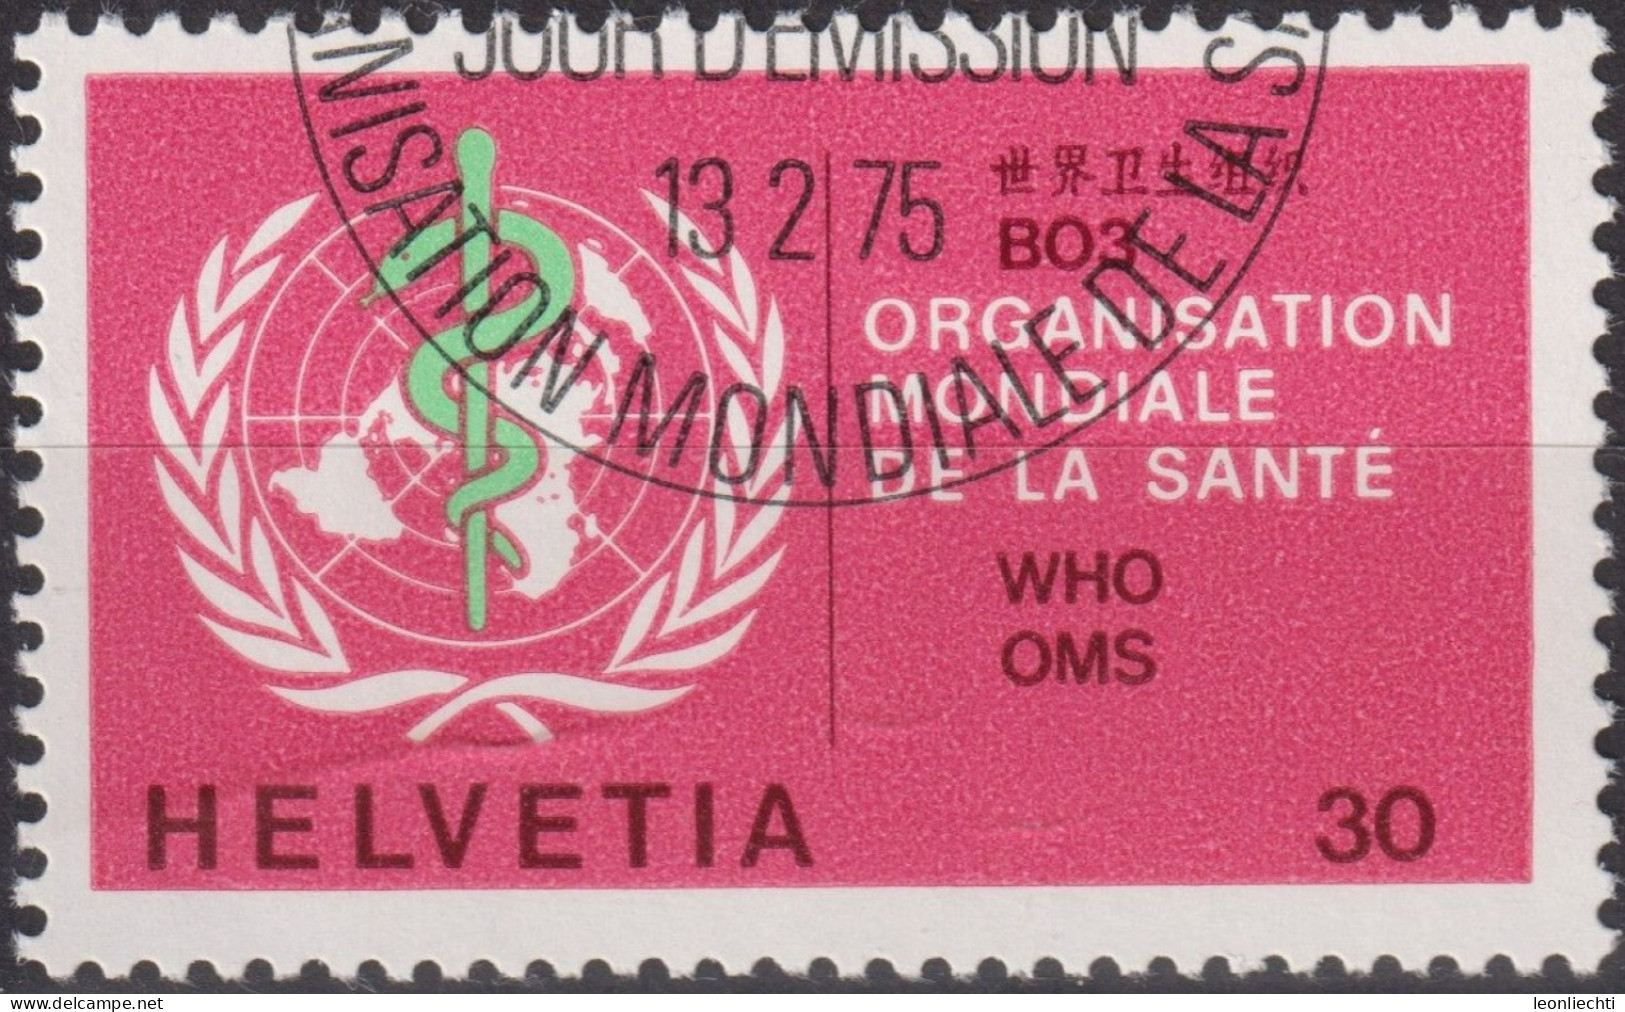 1975 Schweiz / Dienstmarke OMS ° Mi:CH-OMS 36, Yt:CH S446,Zum:CH-OMS 36, Emblem OMS - Servizio